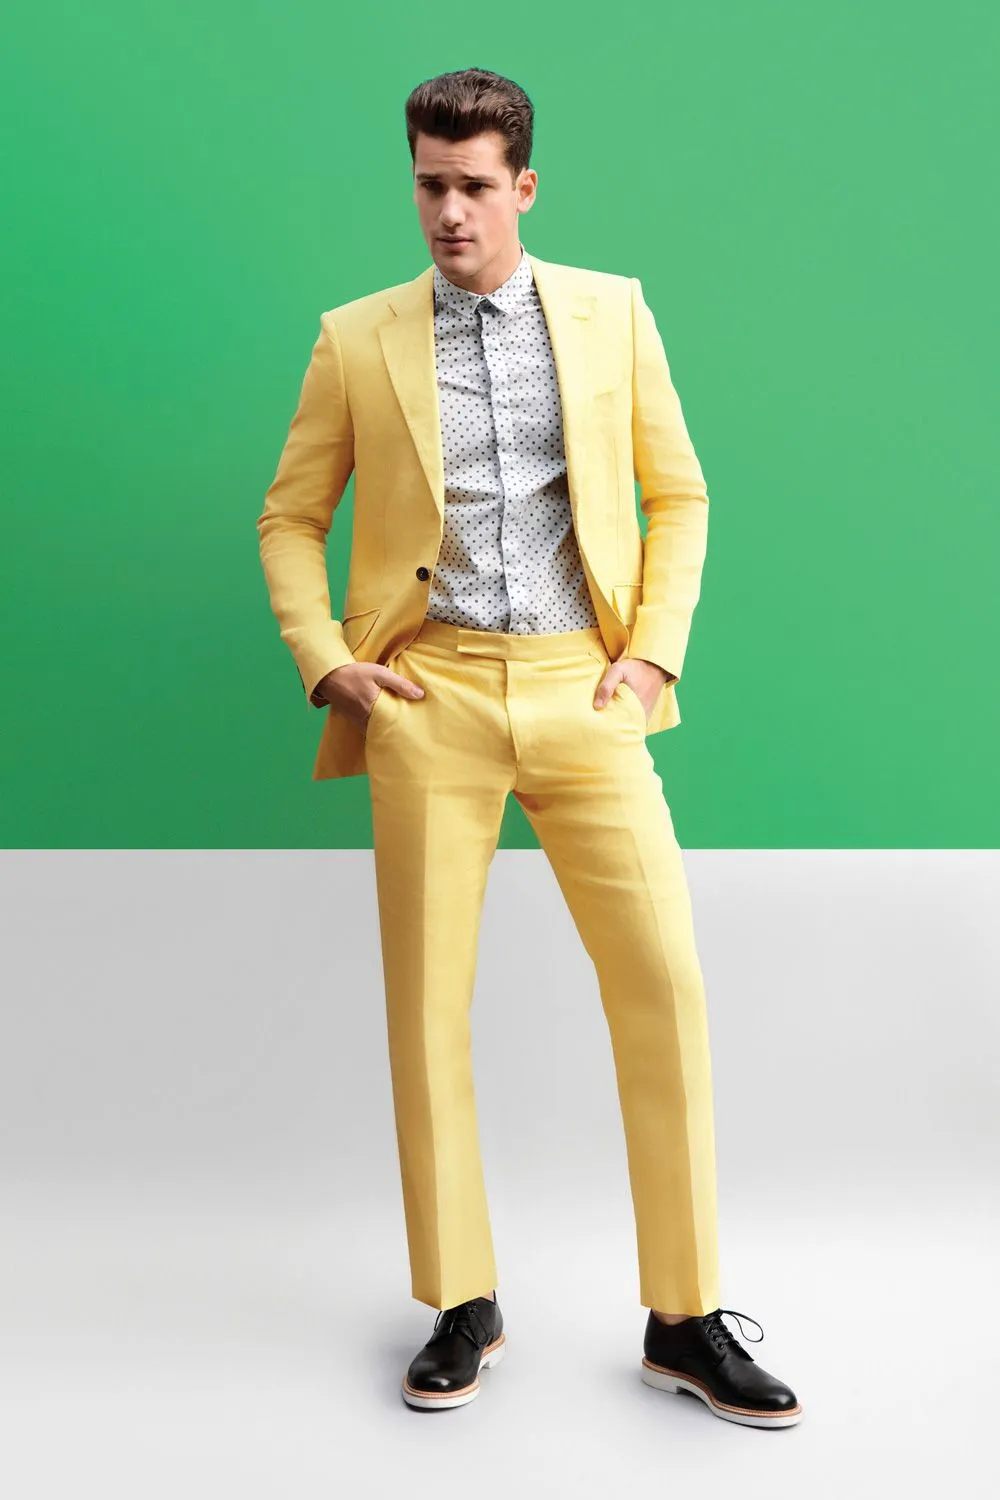 Новое прибытие Groomsmen Нотч Groom Смокинги желтый Мужские костюмы Свадебные / Prom / Dinner шафером Blazer (куртка + штаны + Tie) G174